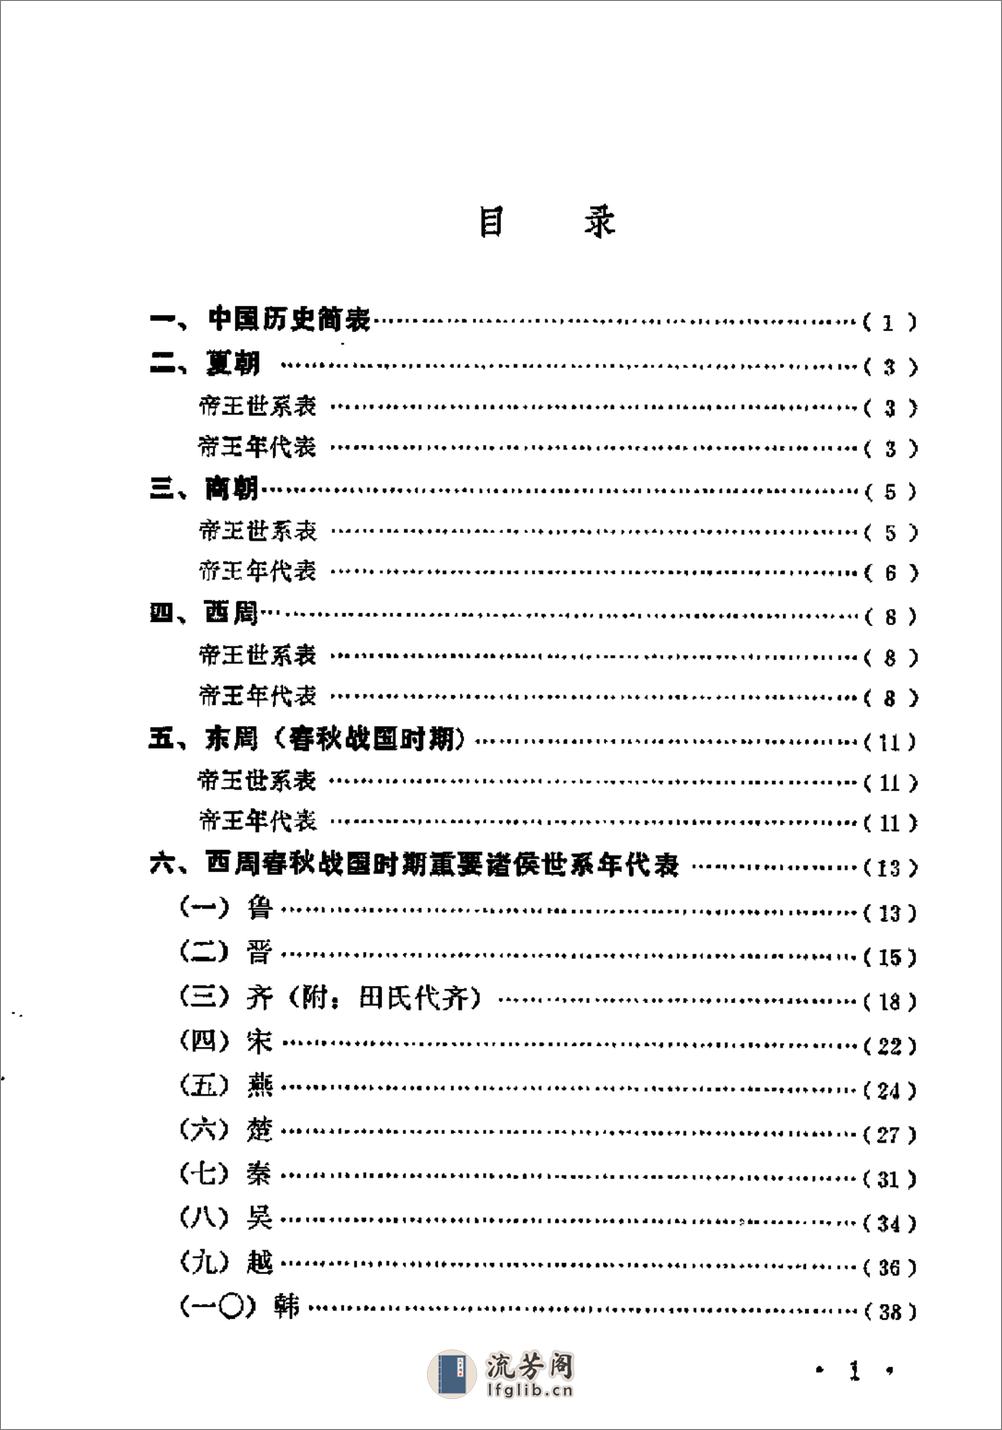 中国历史纪年简表·陈作良·中央党校1985 - 第4页预览图